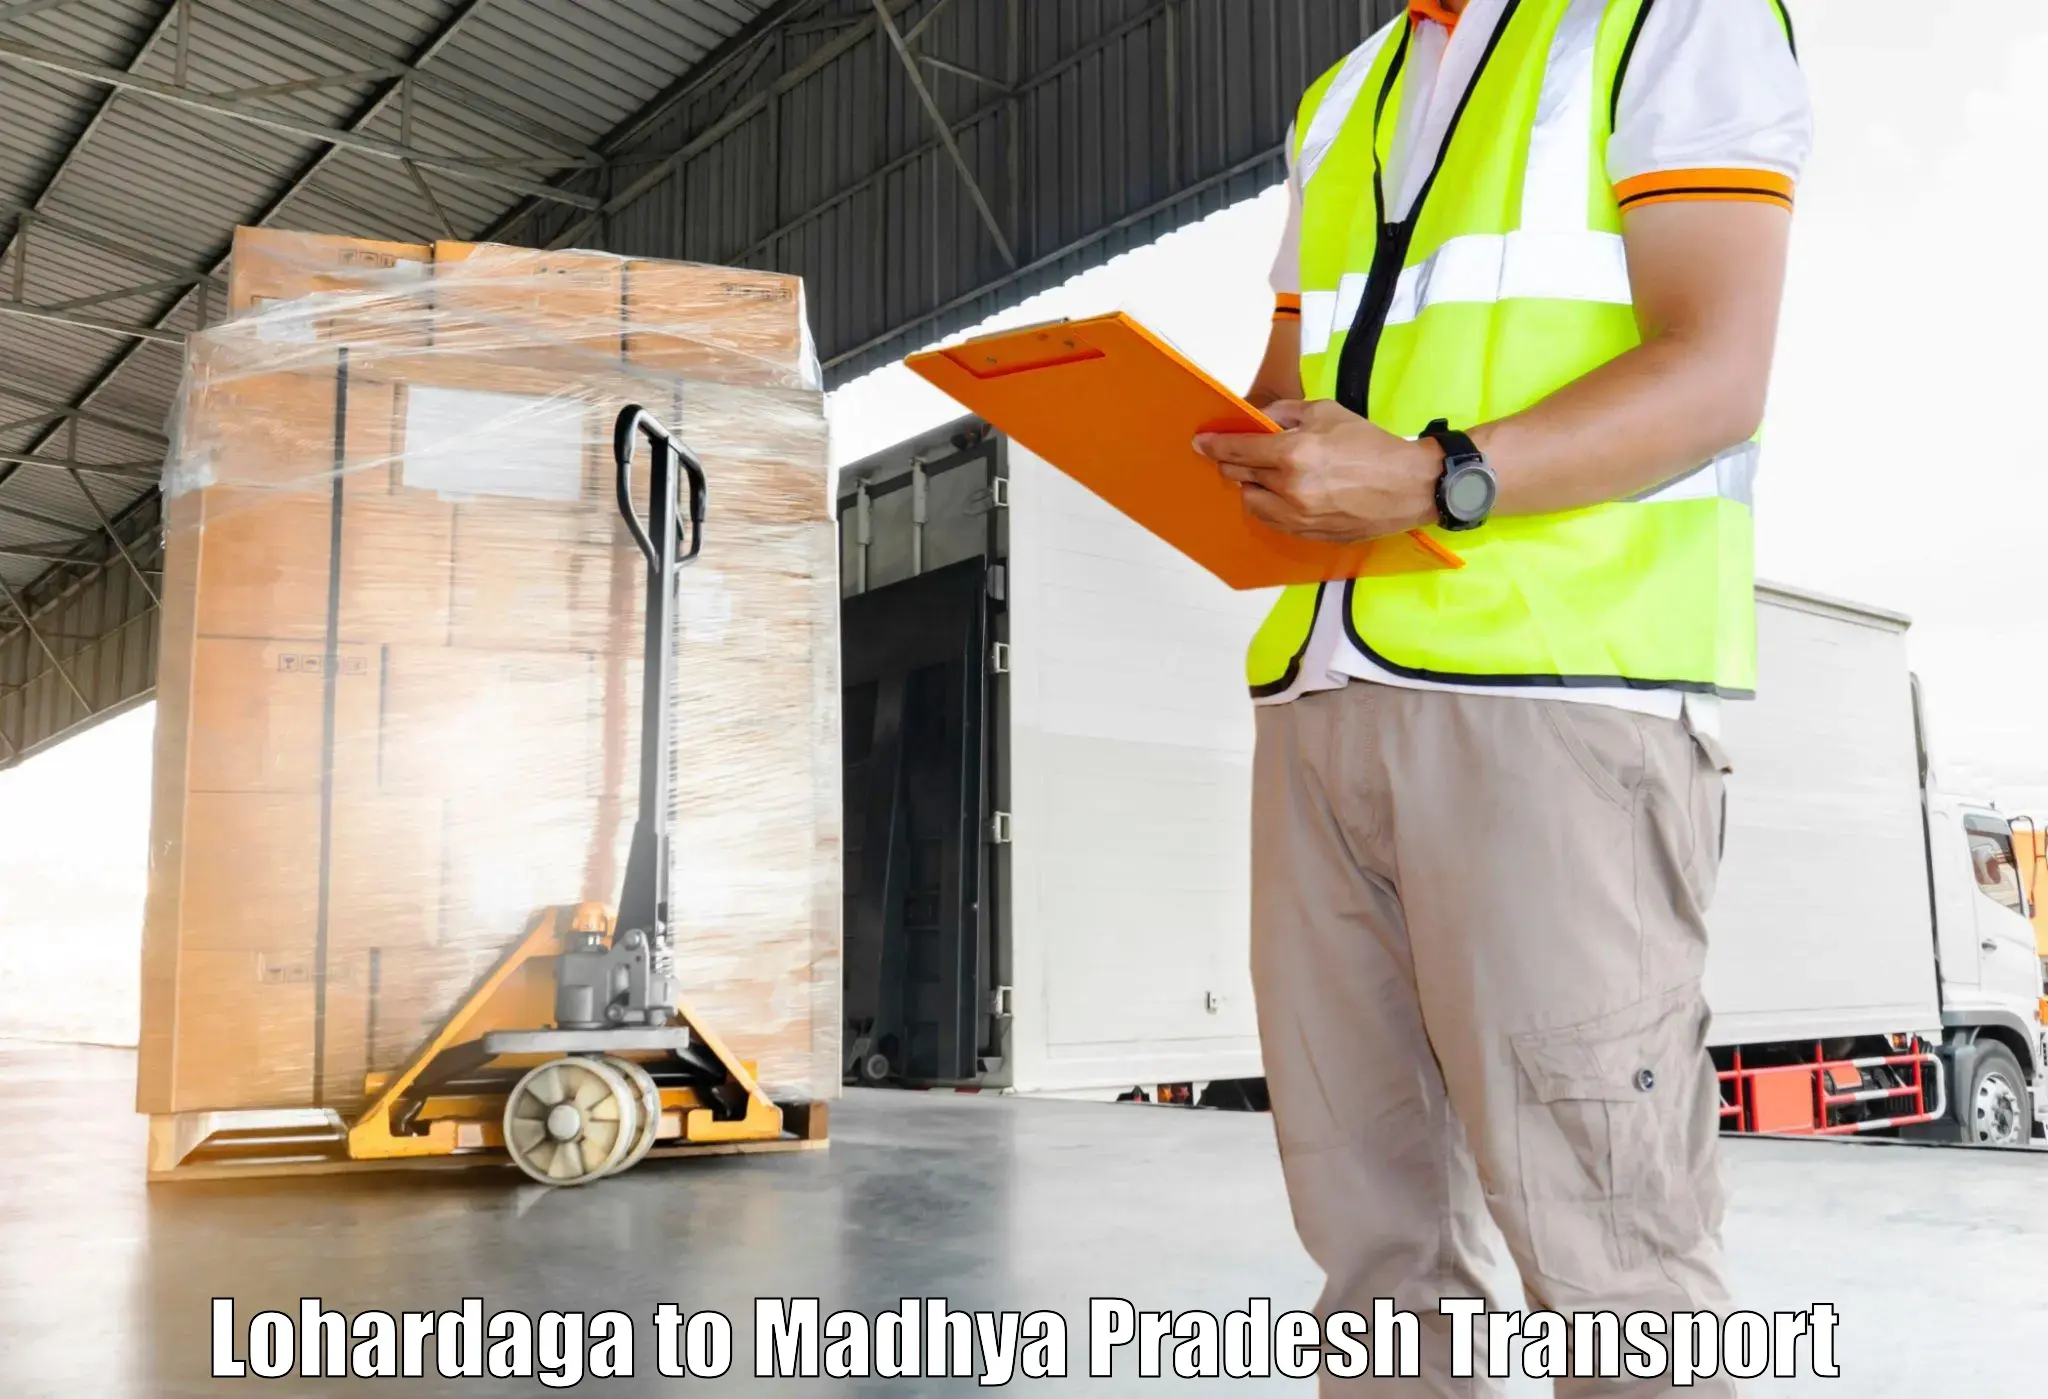 Commercial transport service Lohardaga to Madhya Pradesh